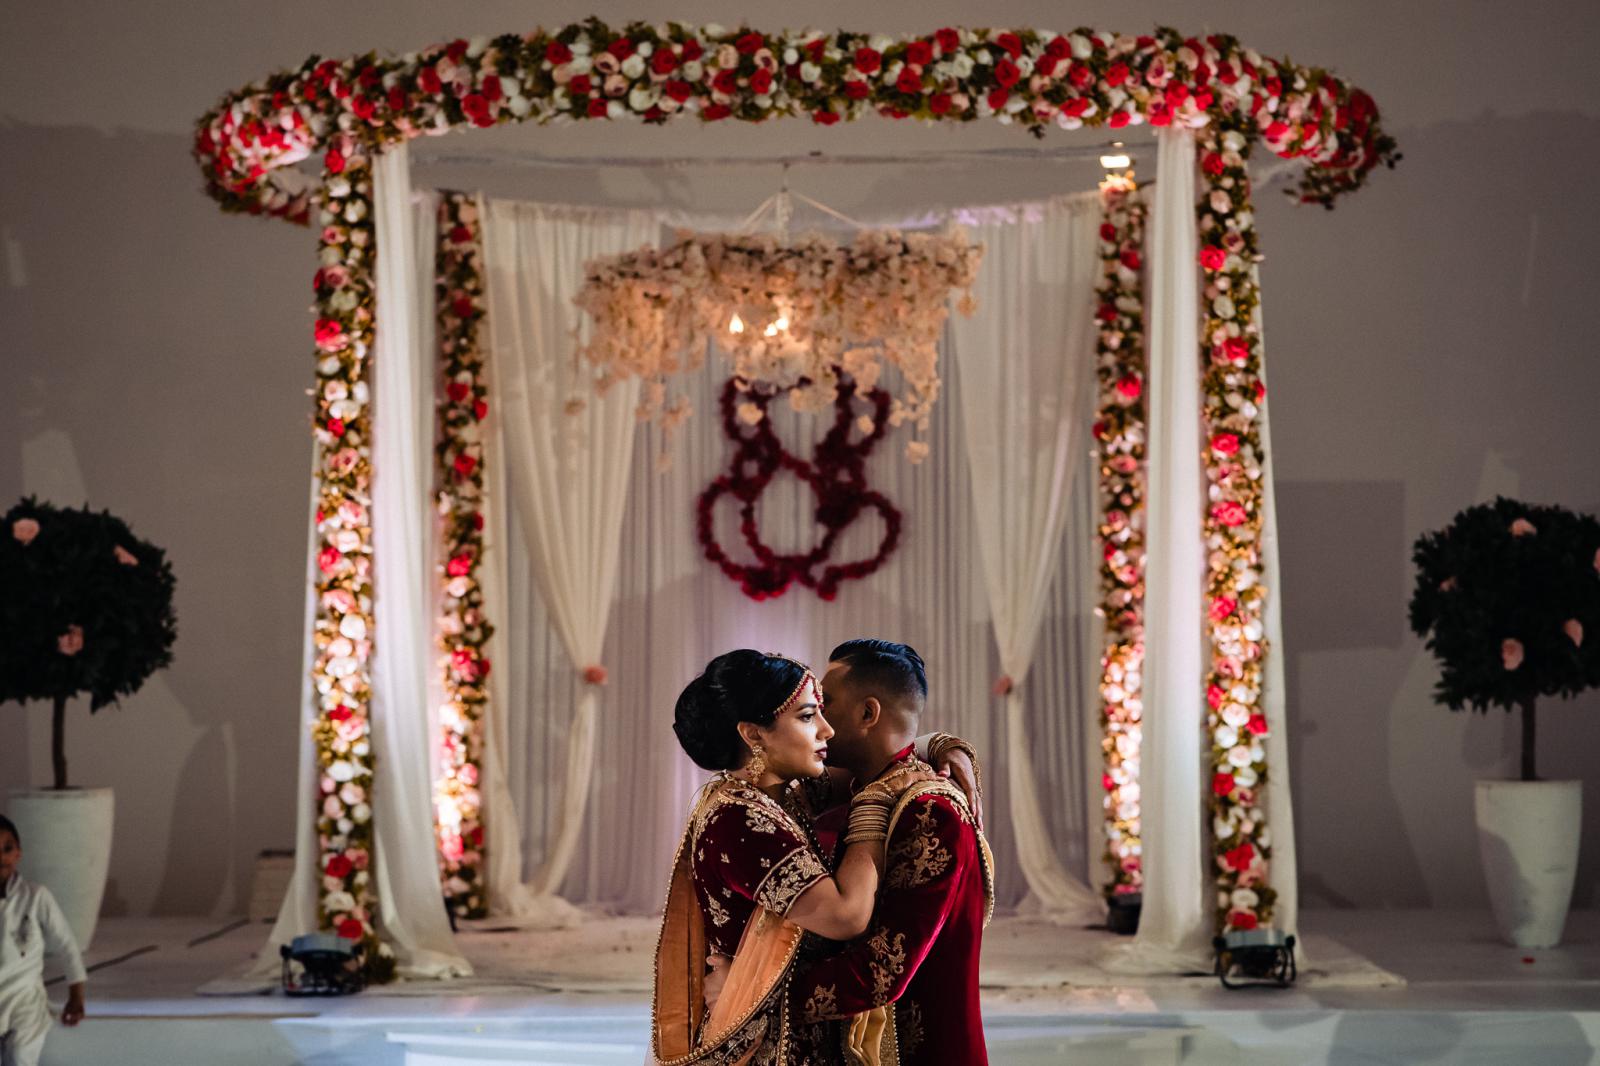 openingsdans  hindoestaanse bruiloft door trouwfotograaf rey events almere